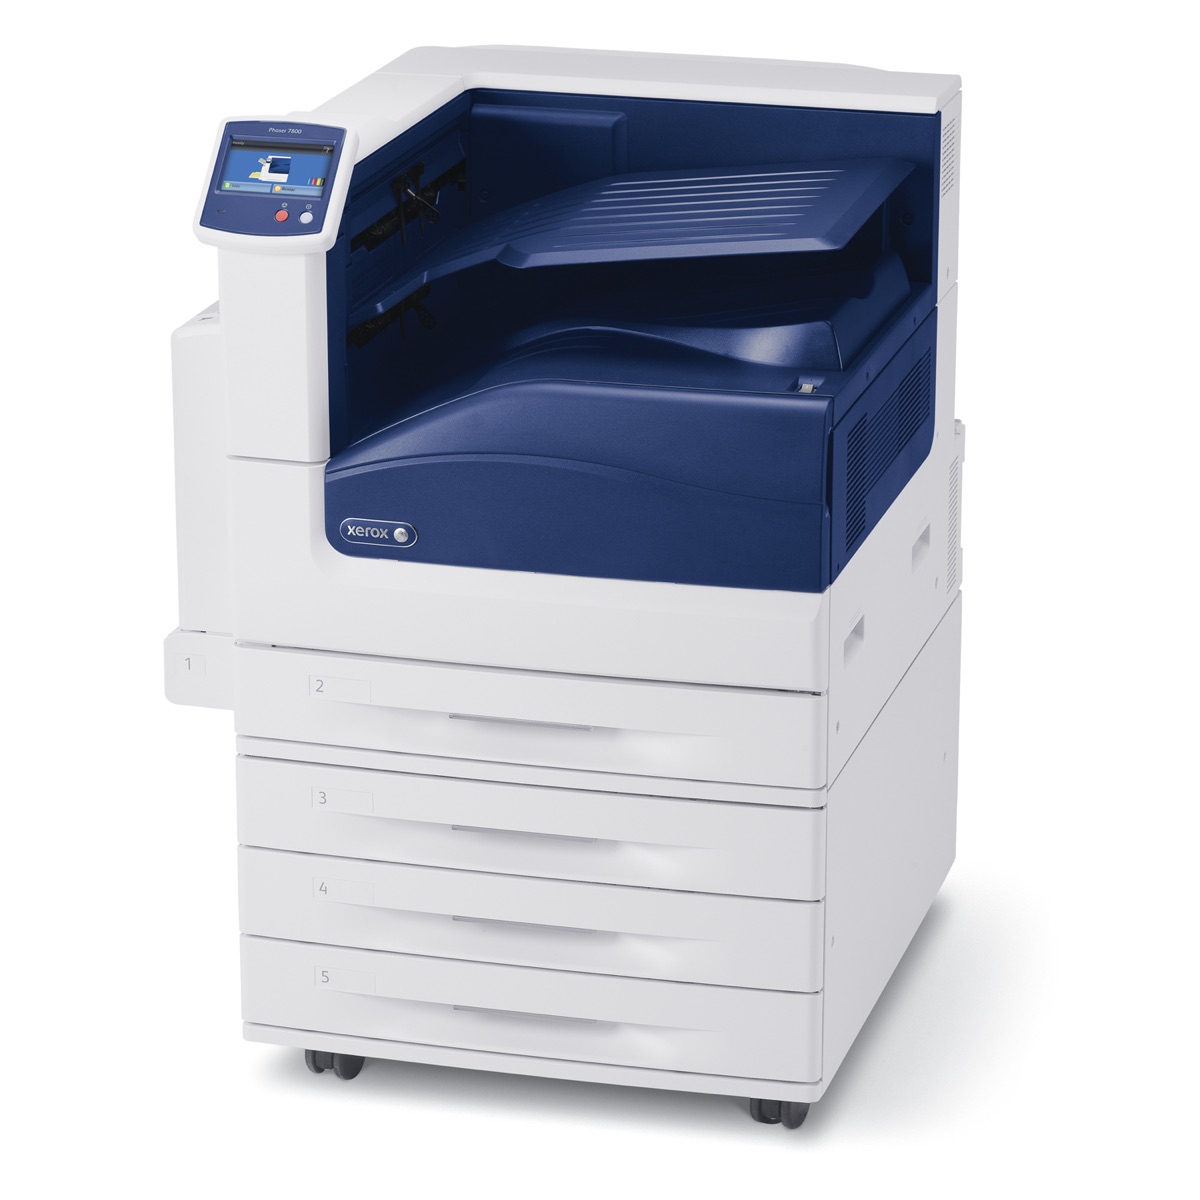 Xerox Printers:  The Xerox Phaser 7800GX Printer